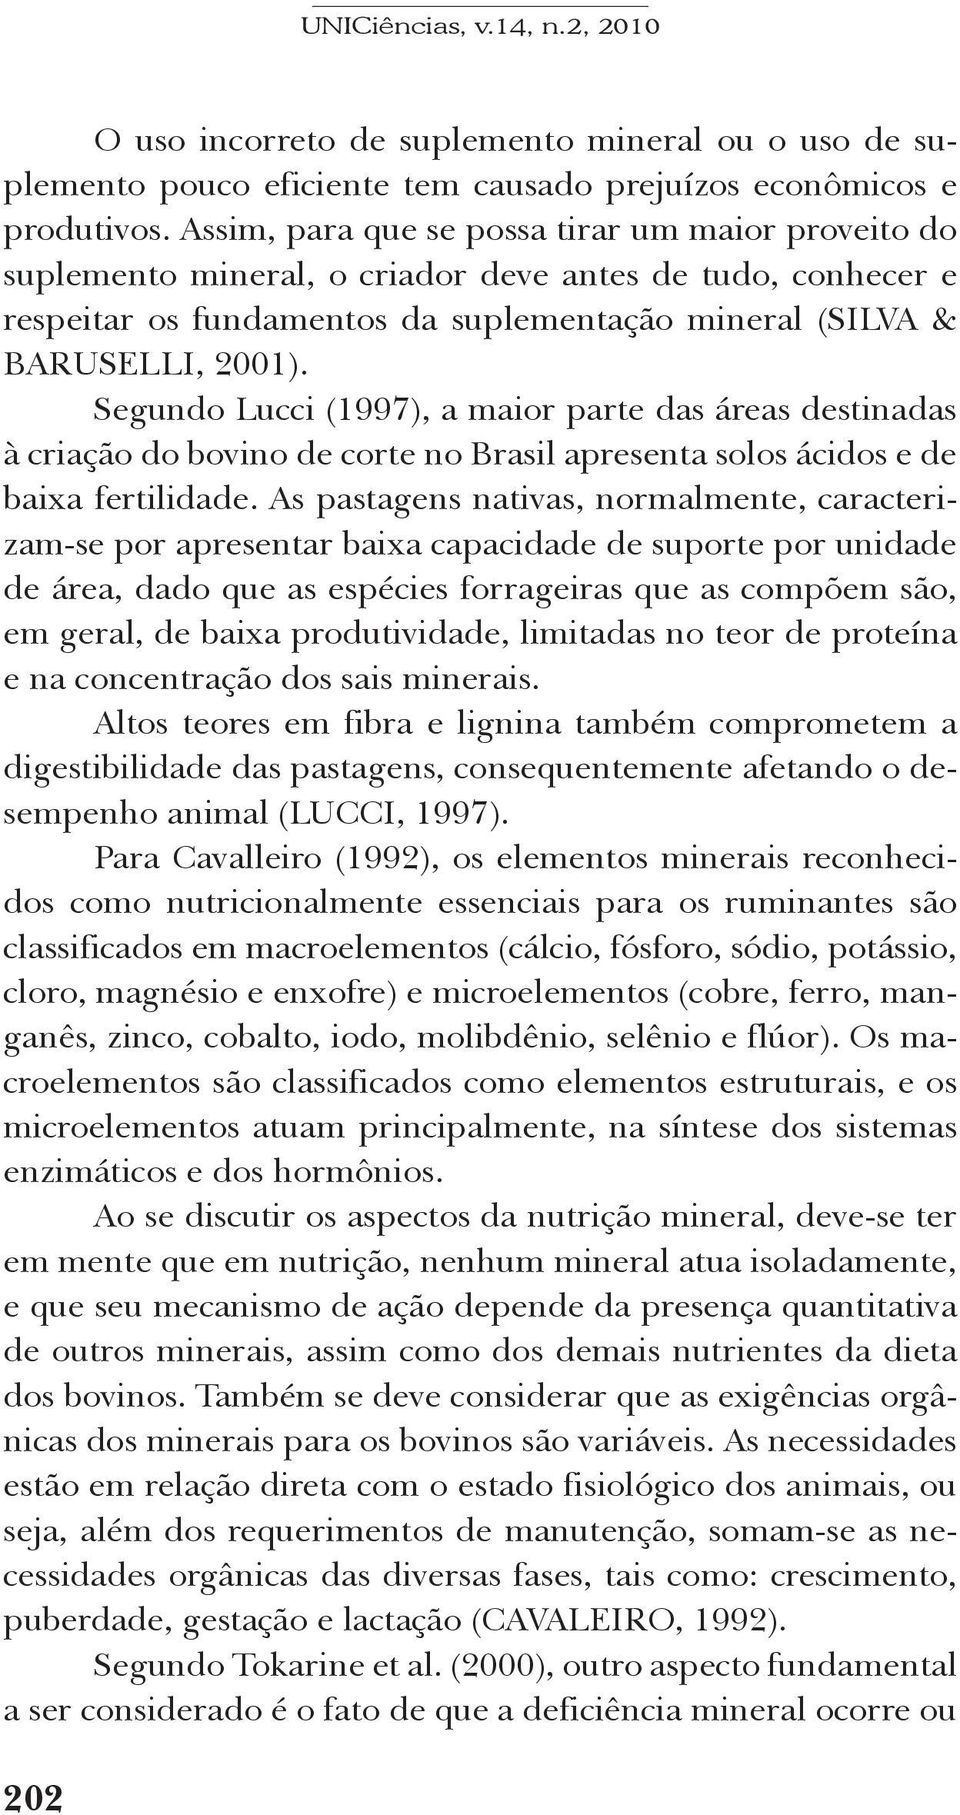 Segundo Lucci (1997), a maior parte das áreas destinadas à criação do bovino de corte no Brasil apresenta solos ácidos e de baixa fertilidade.